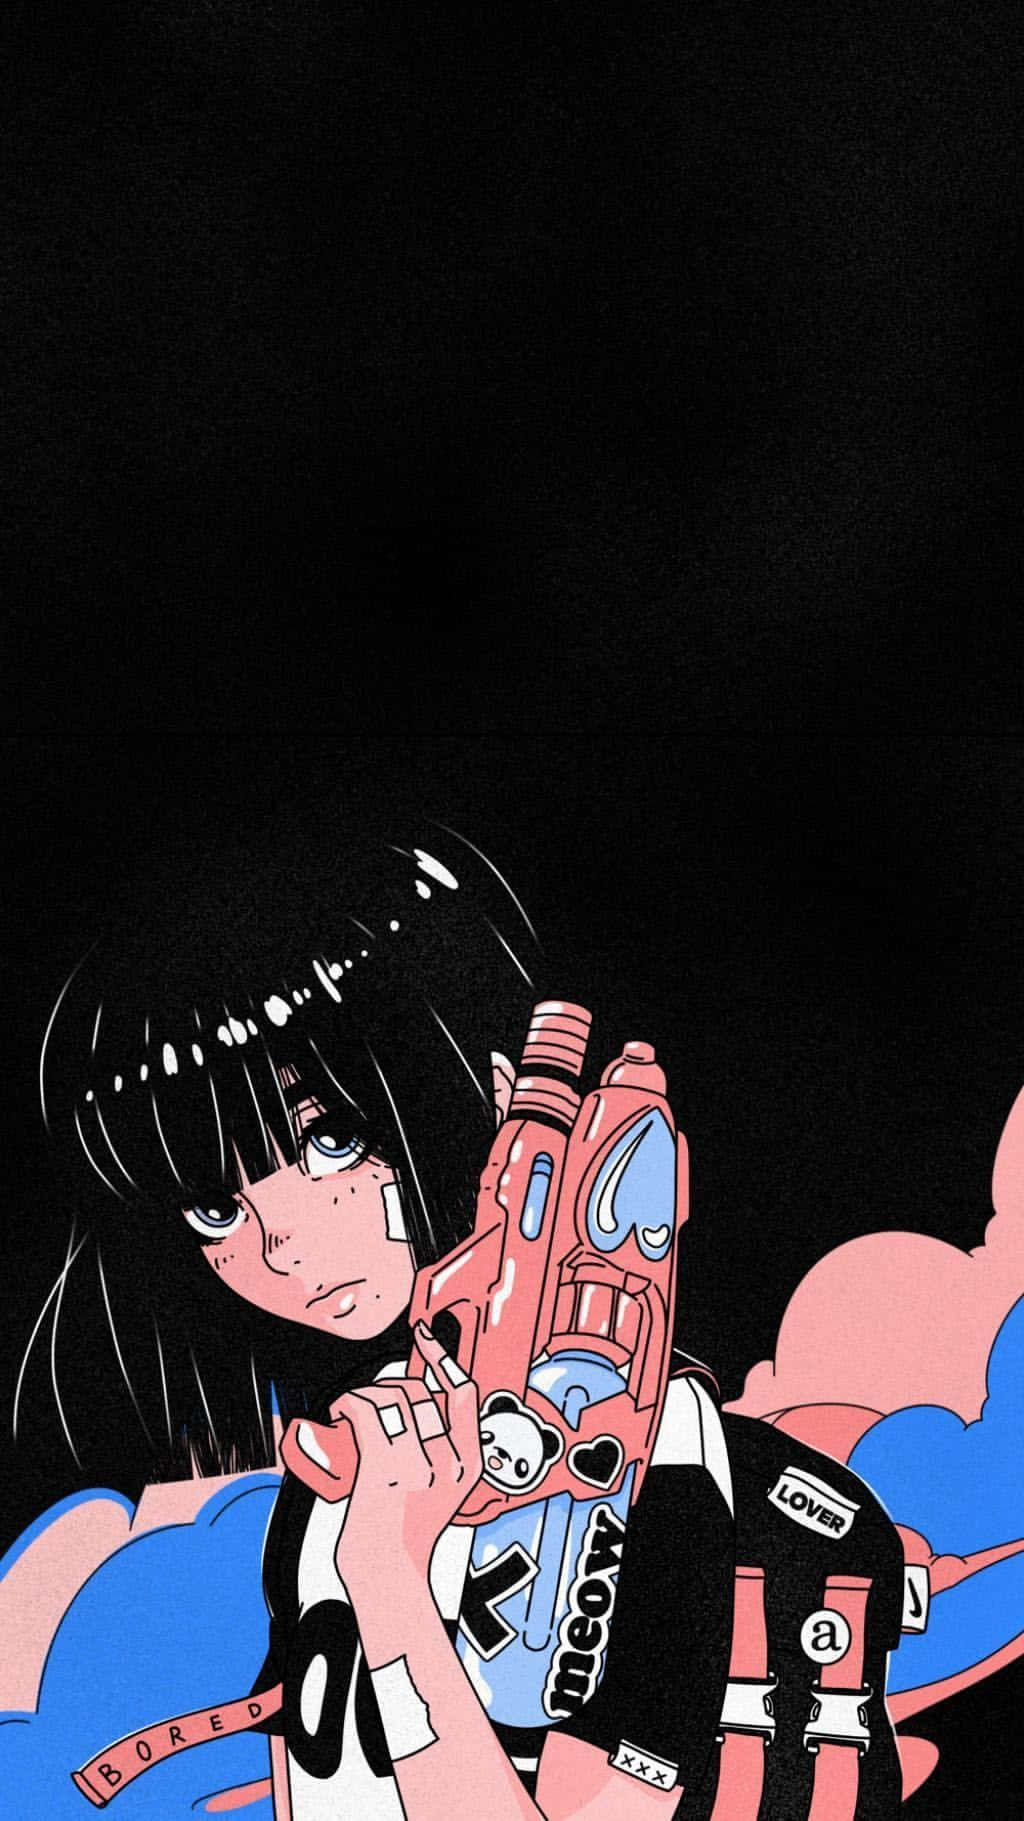 Aesthetic anime girl phone wallpaper - Anime girl, 90s anime